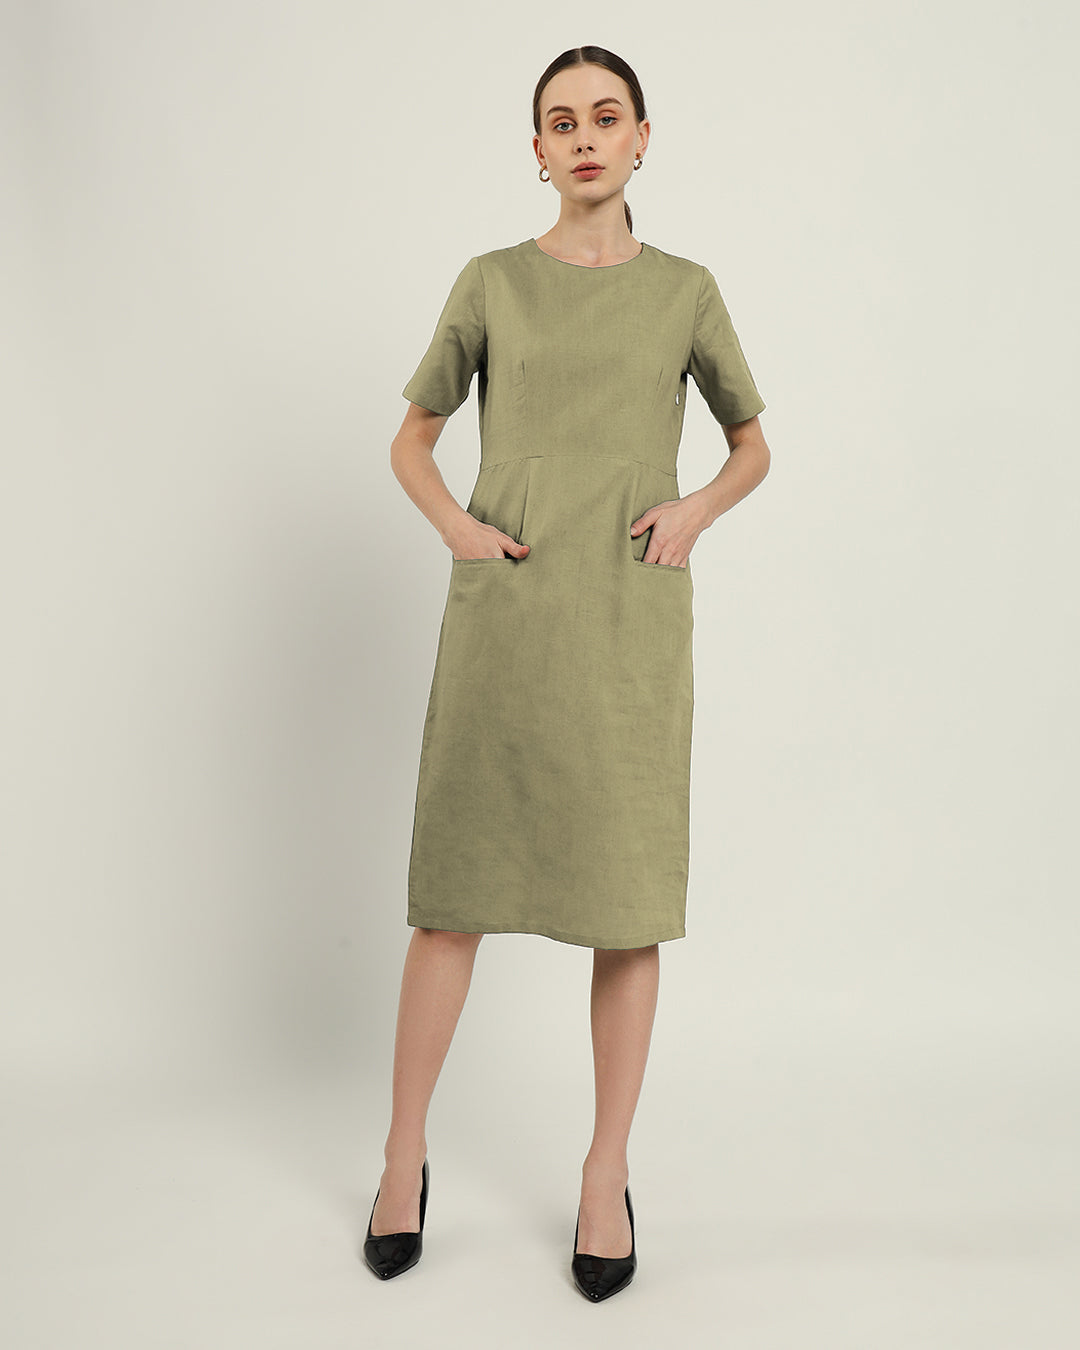 The Cairo Daisy Olive Linen Dress